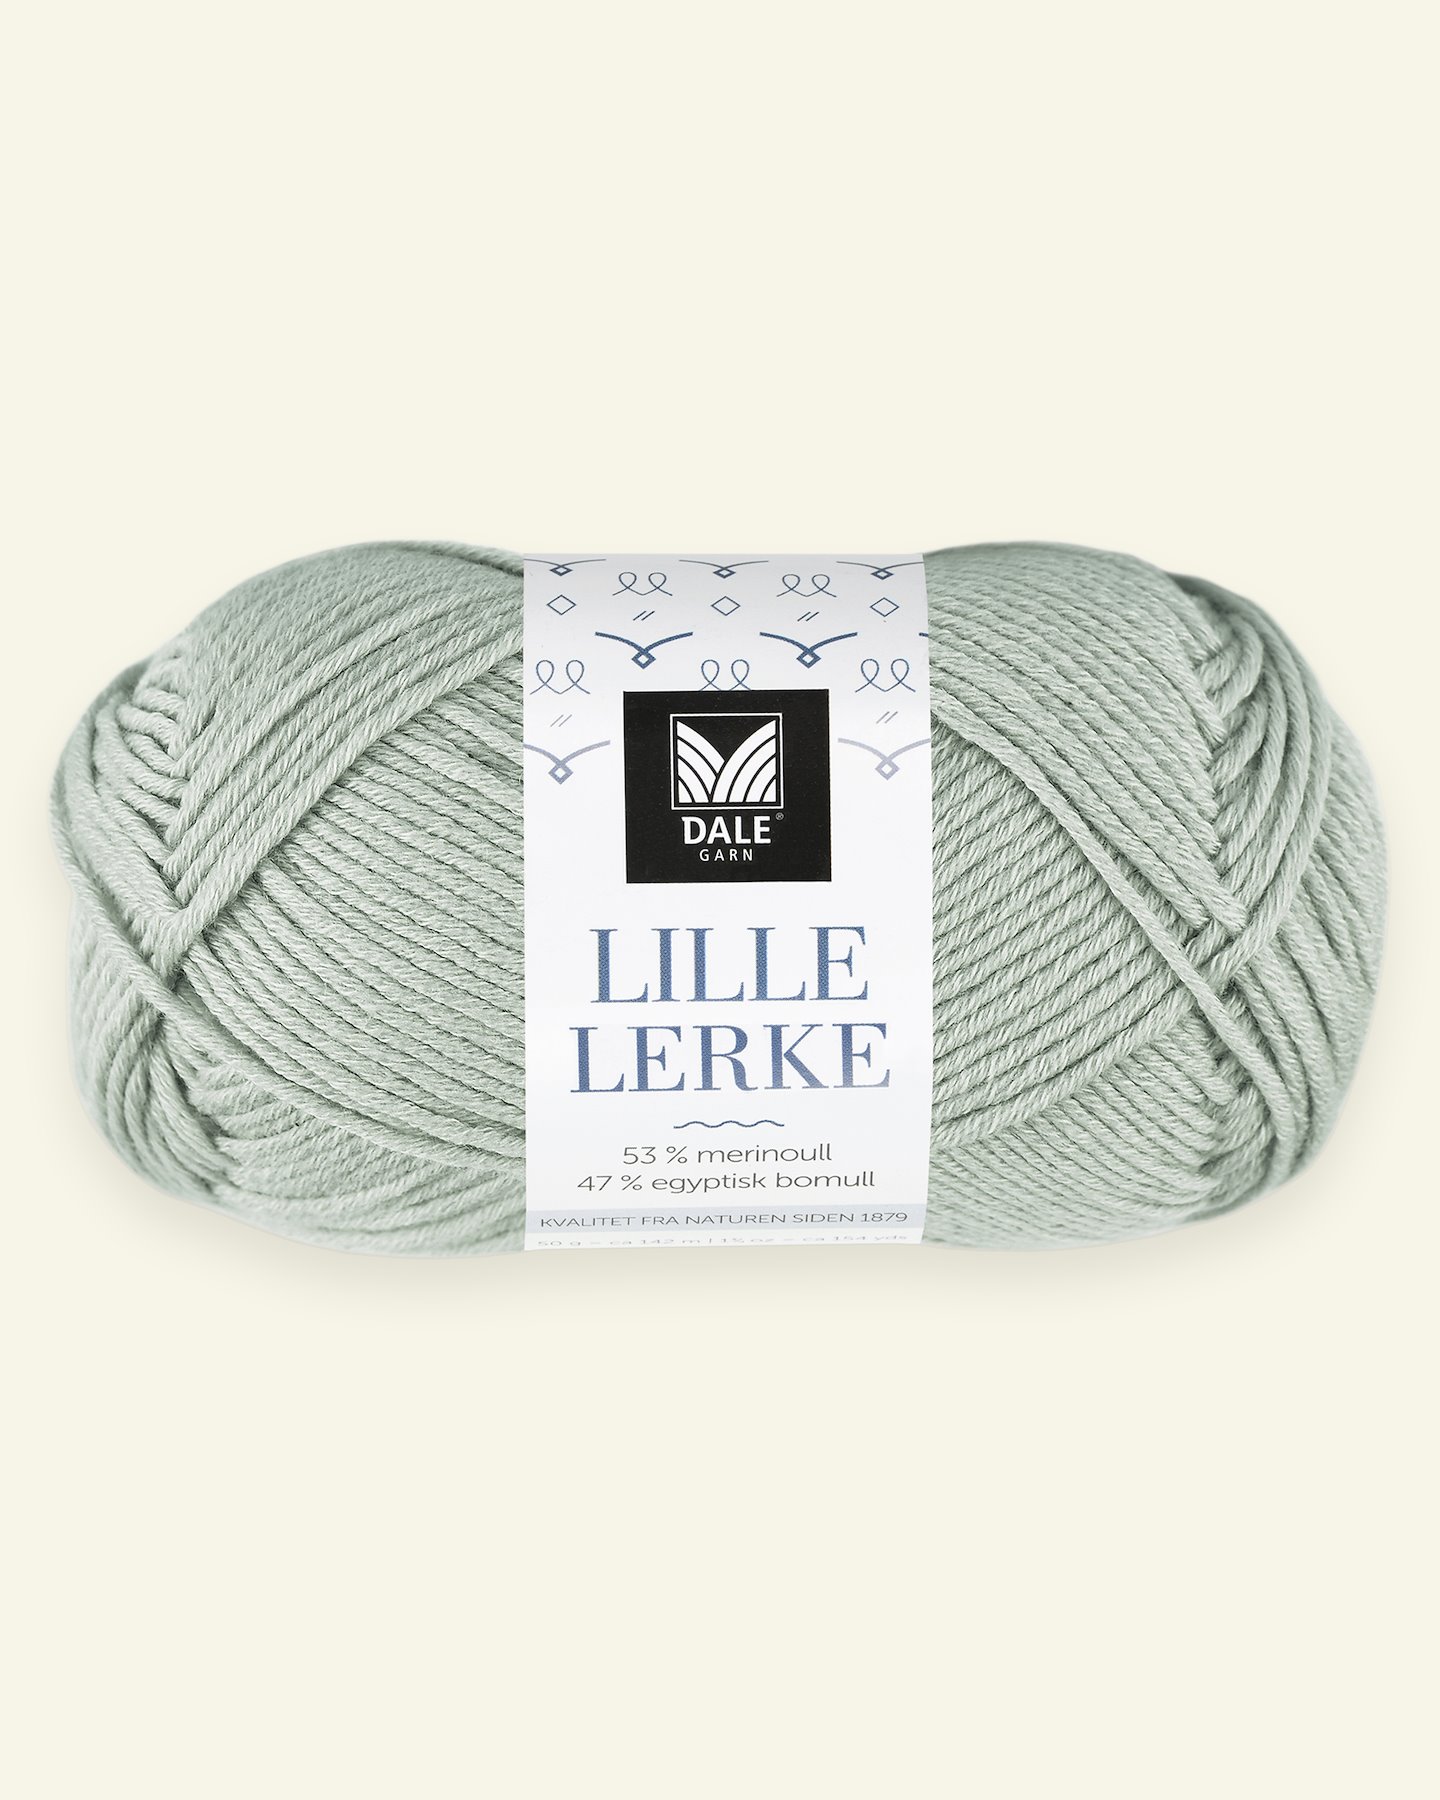 Dale Garn, merino/bomuldsgarn "Lille Lerke", lys jadegrøn (8137) 90000418_pack